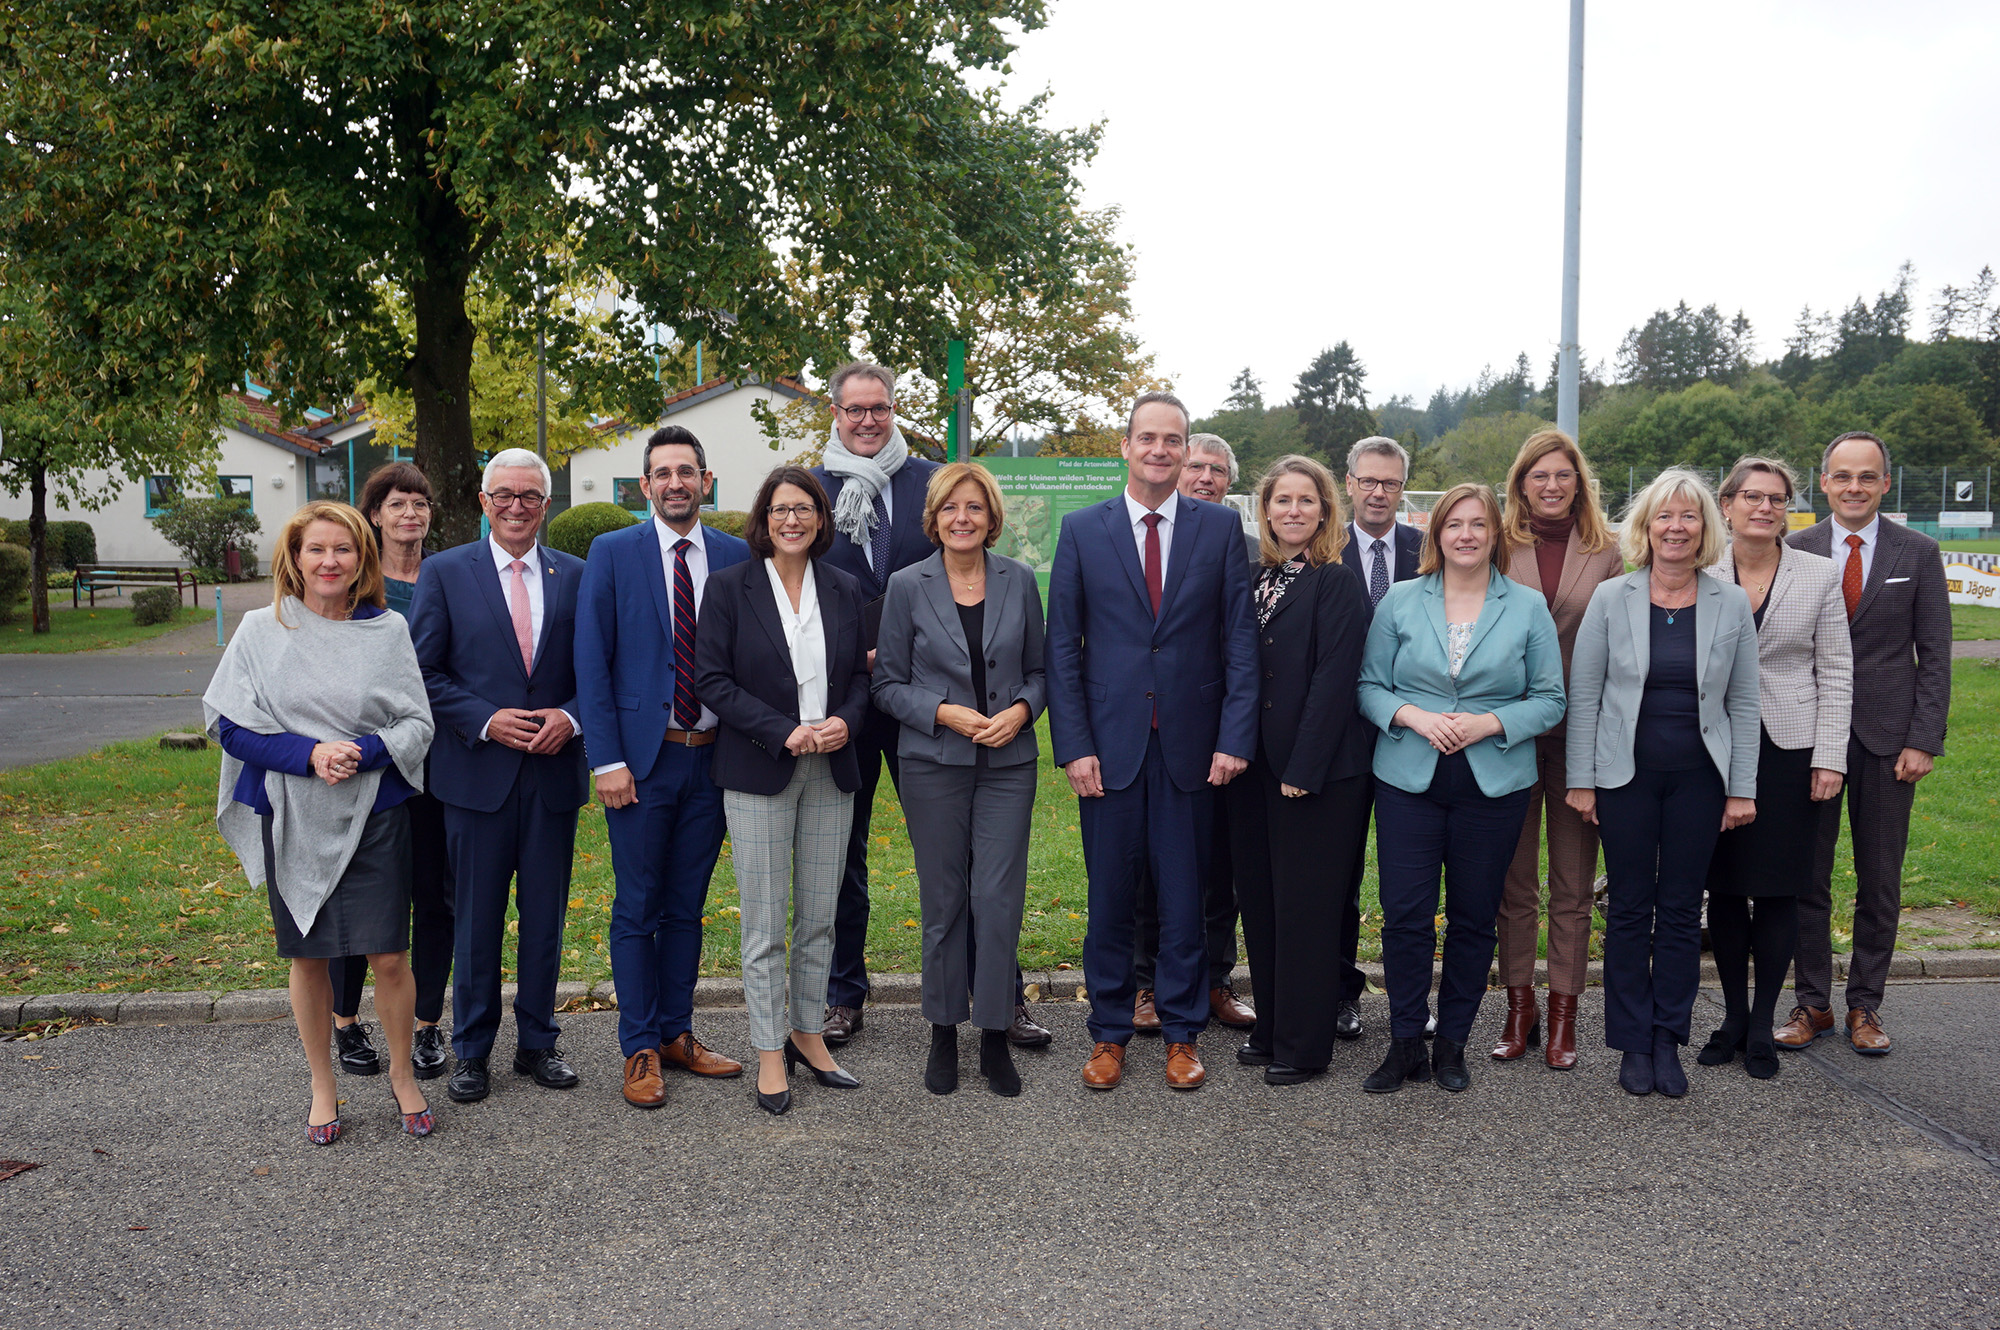 Teilnehmer am Treffen der Regierungen aus DG und Rheinland-Pfalz (Bild: Stephan Pesch/BRF)